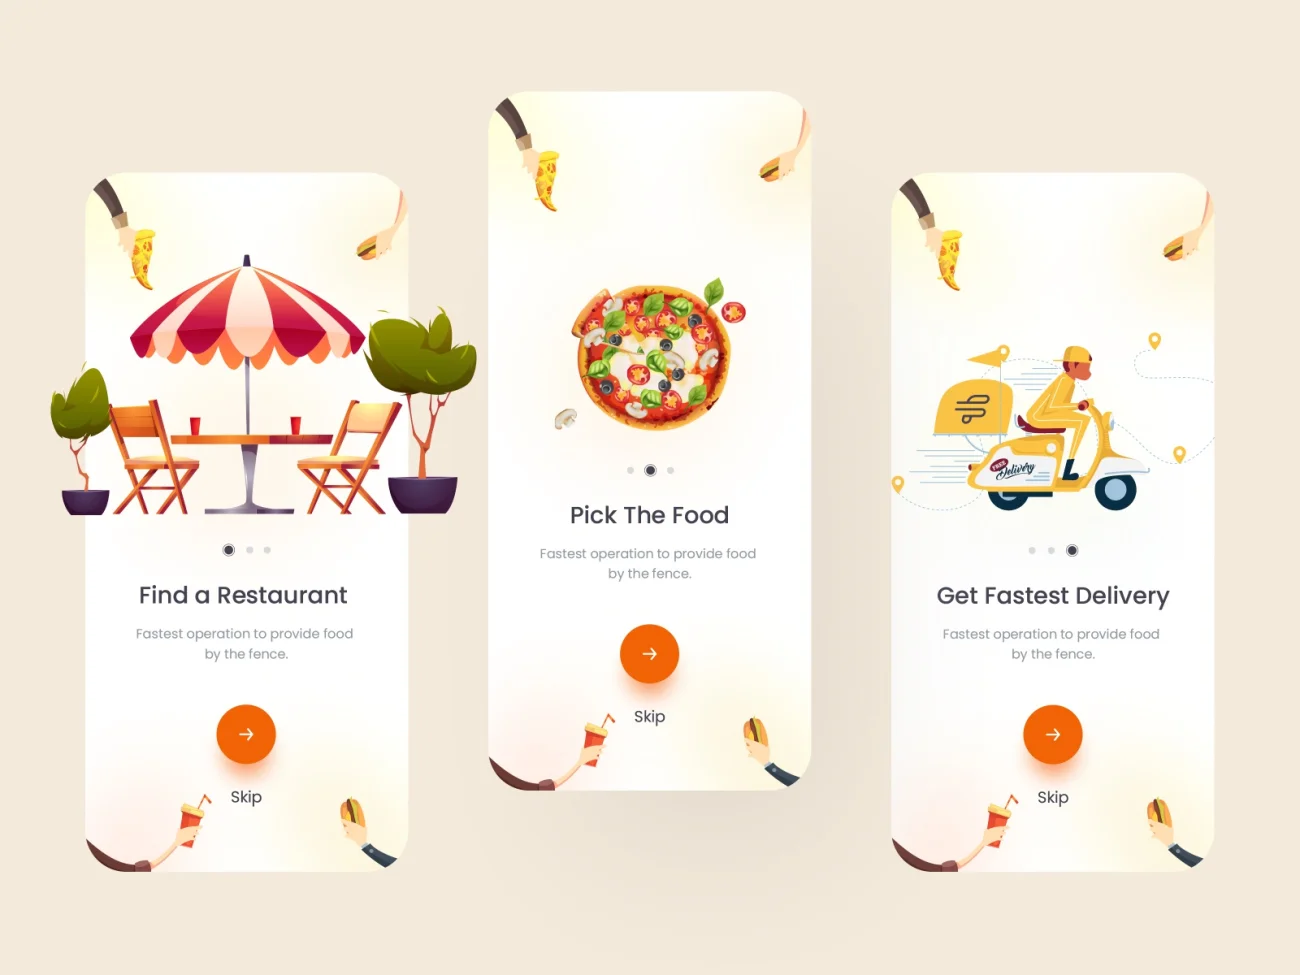 外卖点餐应用设计套件 food order and delivery mobile app ui kit-ui套件、应用-到位啦UI